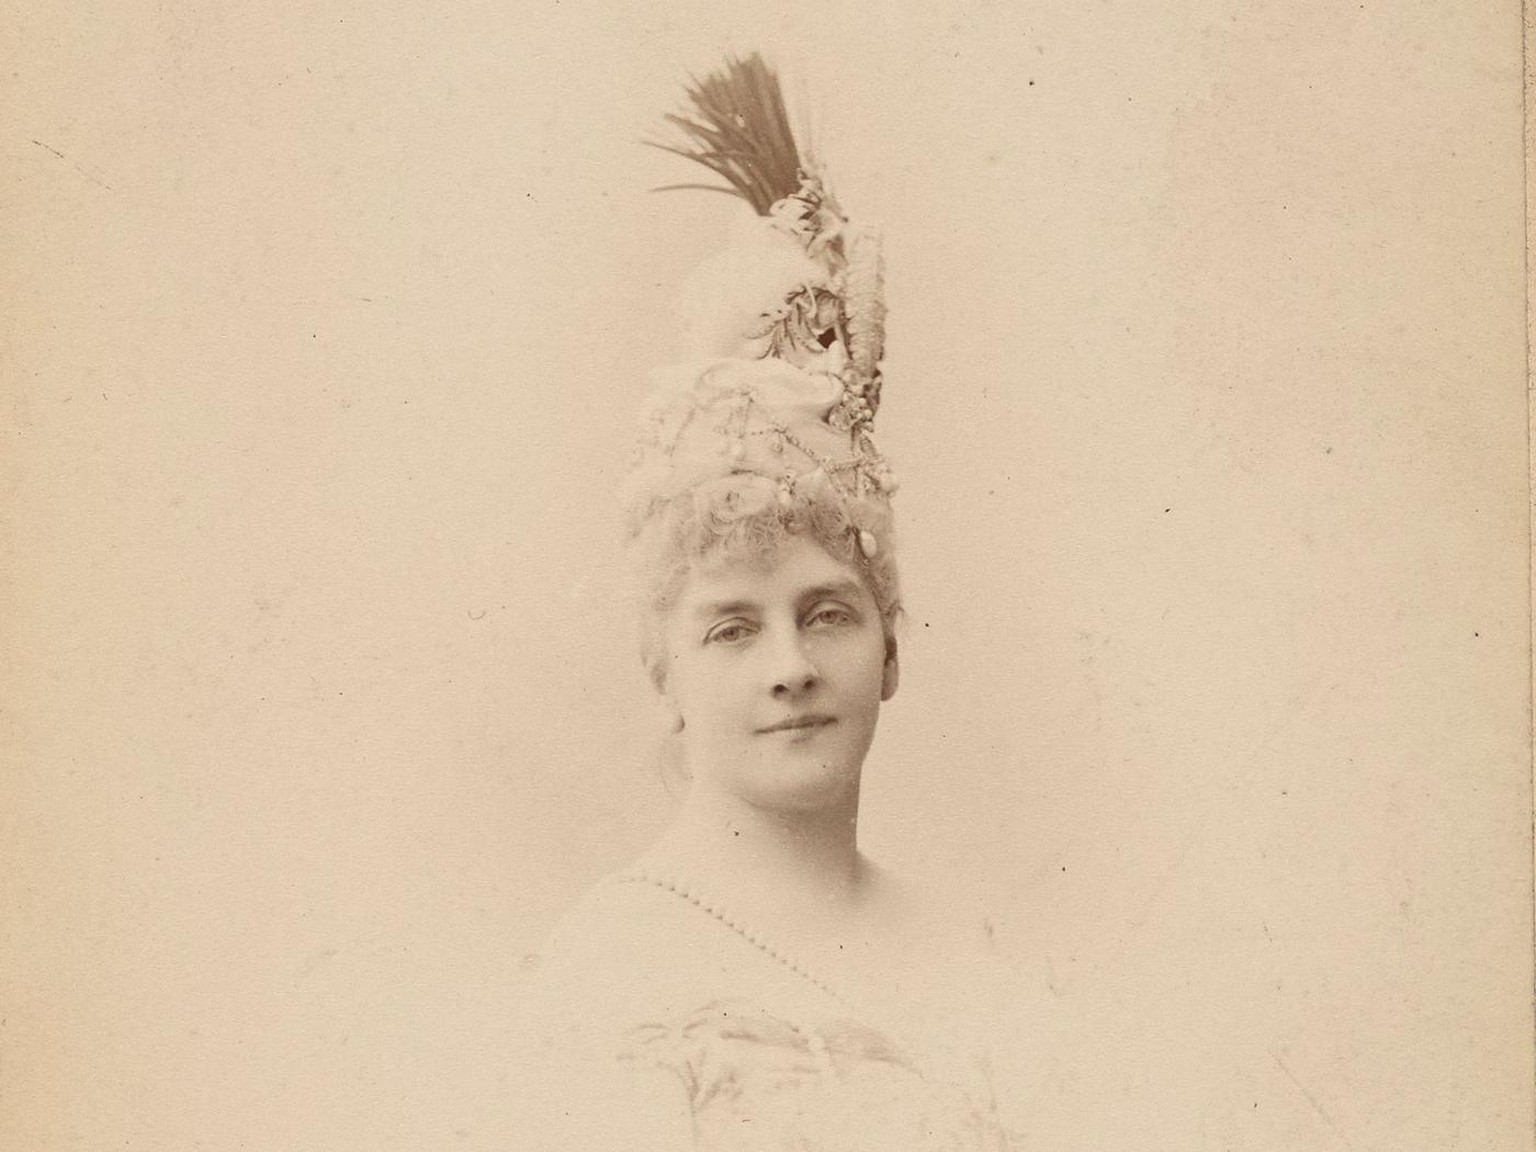 Porträt von Hélène de Pourtalès, um 1878.
http://www.getty.edu/art/collection/objects/39166/nadar-gaspard-felix-tournachon-paul-nadar-countess-helene-de-pourtales-french-about-1878/?dz=0.5000,0.5000,0 ...